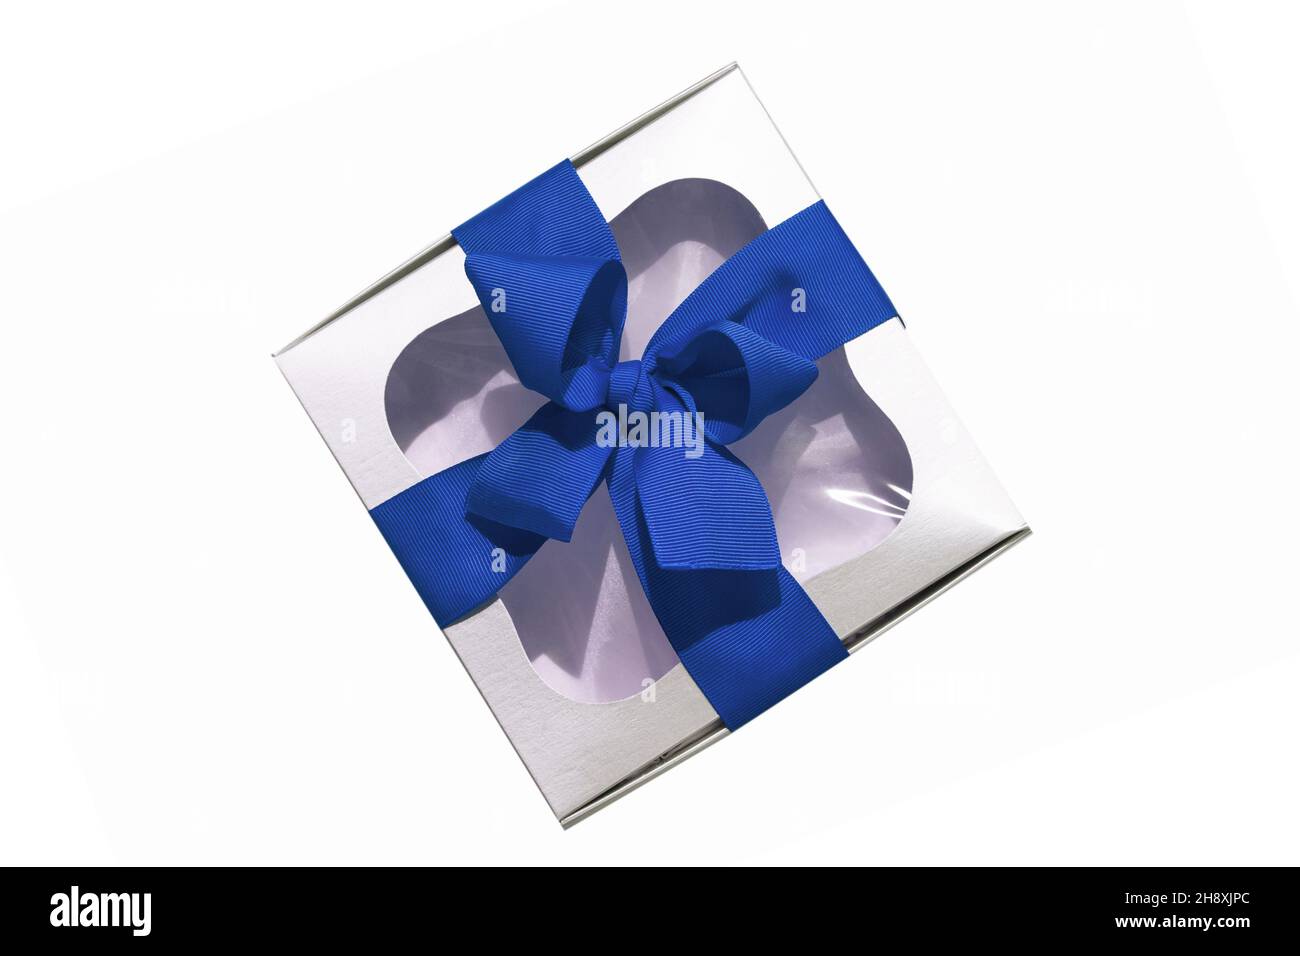 Boîte cadeau argentée tendance avec noeud en ruban bleu isolé sur fond blanc.Boîte cadeau métallique élégante avec fenêtre transparente.Bannière web contrastée Banque D'Images